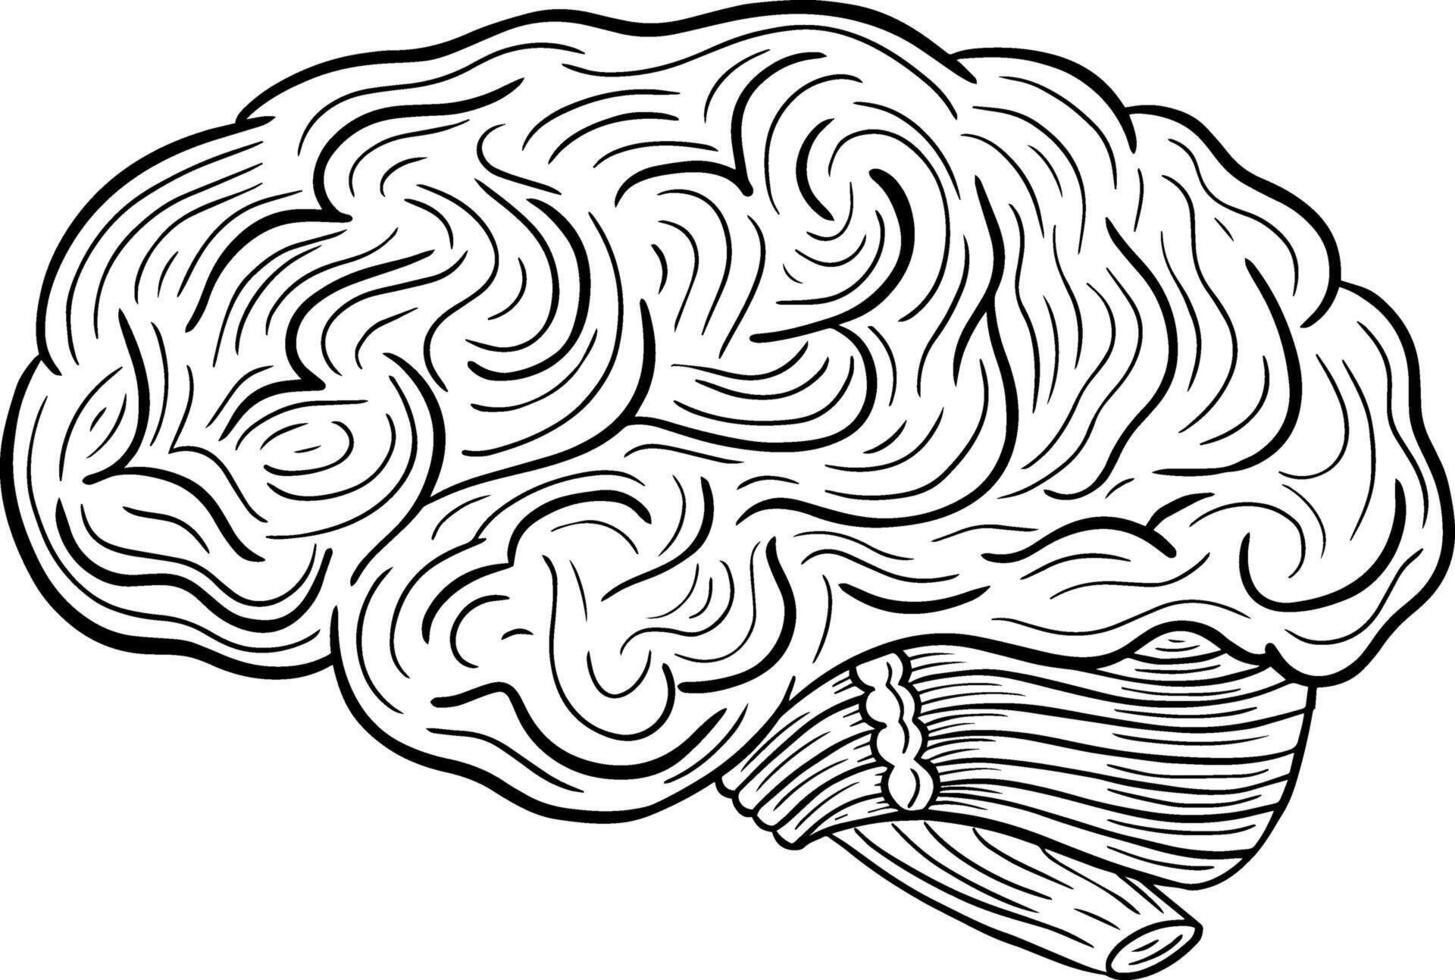 umano cervello mano disegnato inciso schizzo disegno vettore